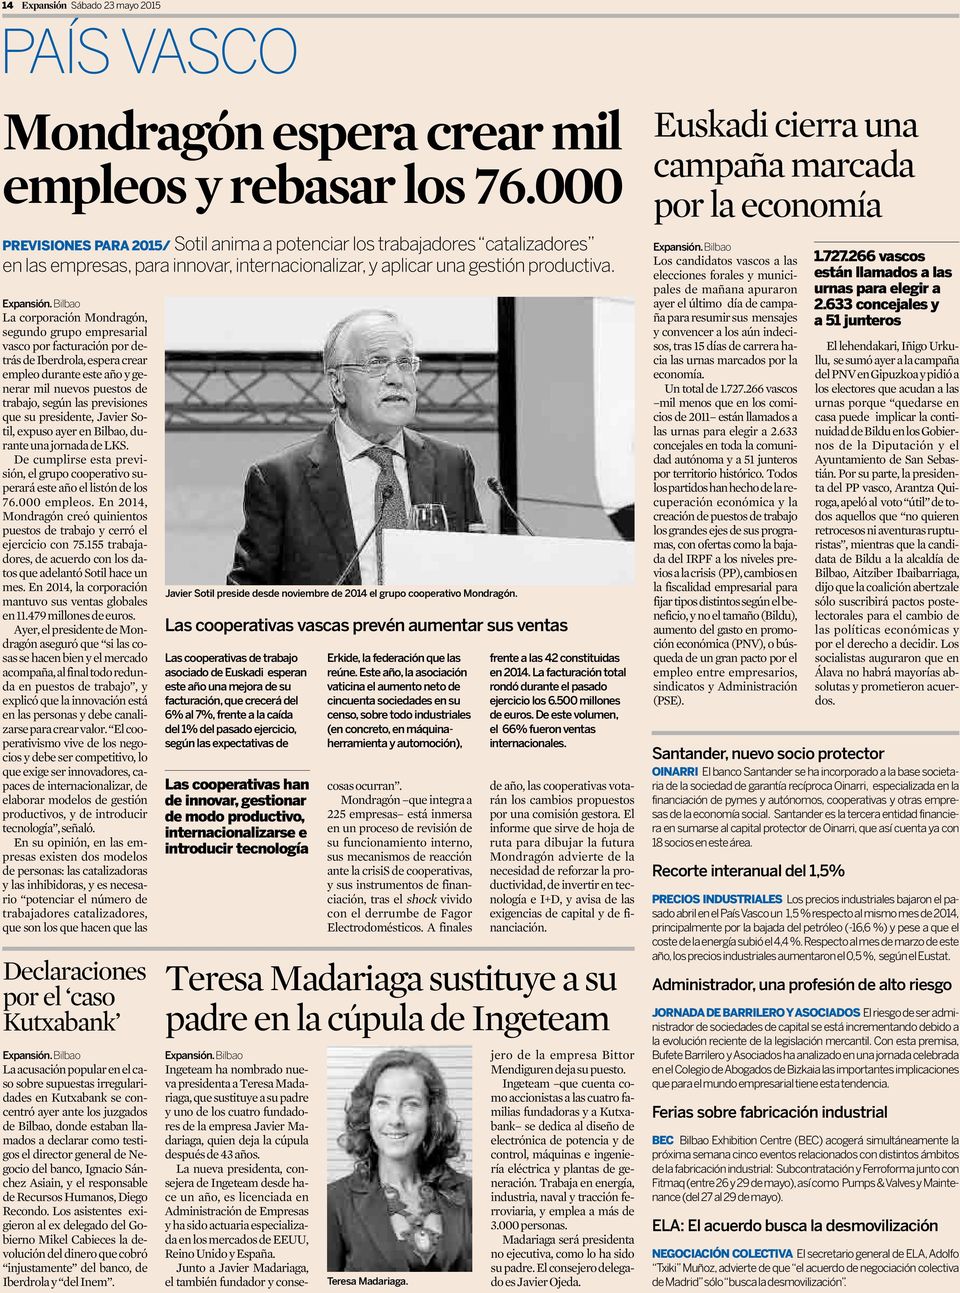 Bilbao La corporación Mondragón, segundo grupo empresarial vasco por facturación por detrás de Iberdrola, espera crear empleo durante este año y generar mil nuevos puestos de trabajo, según las